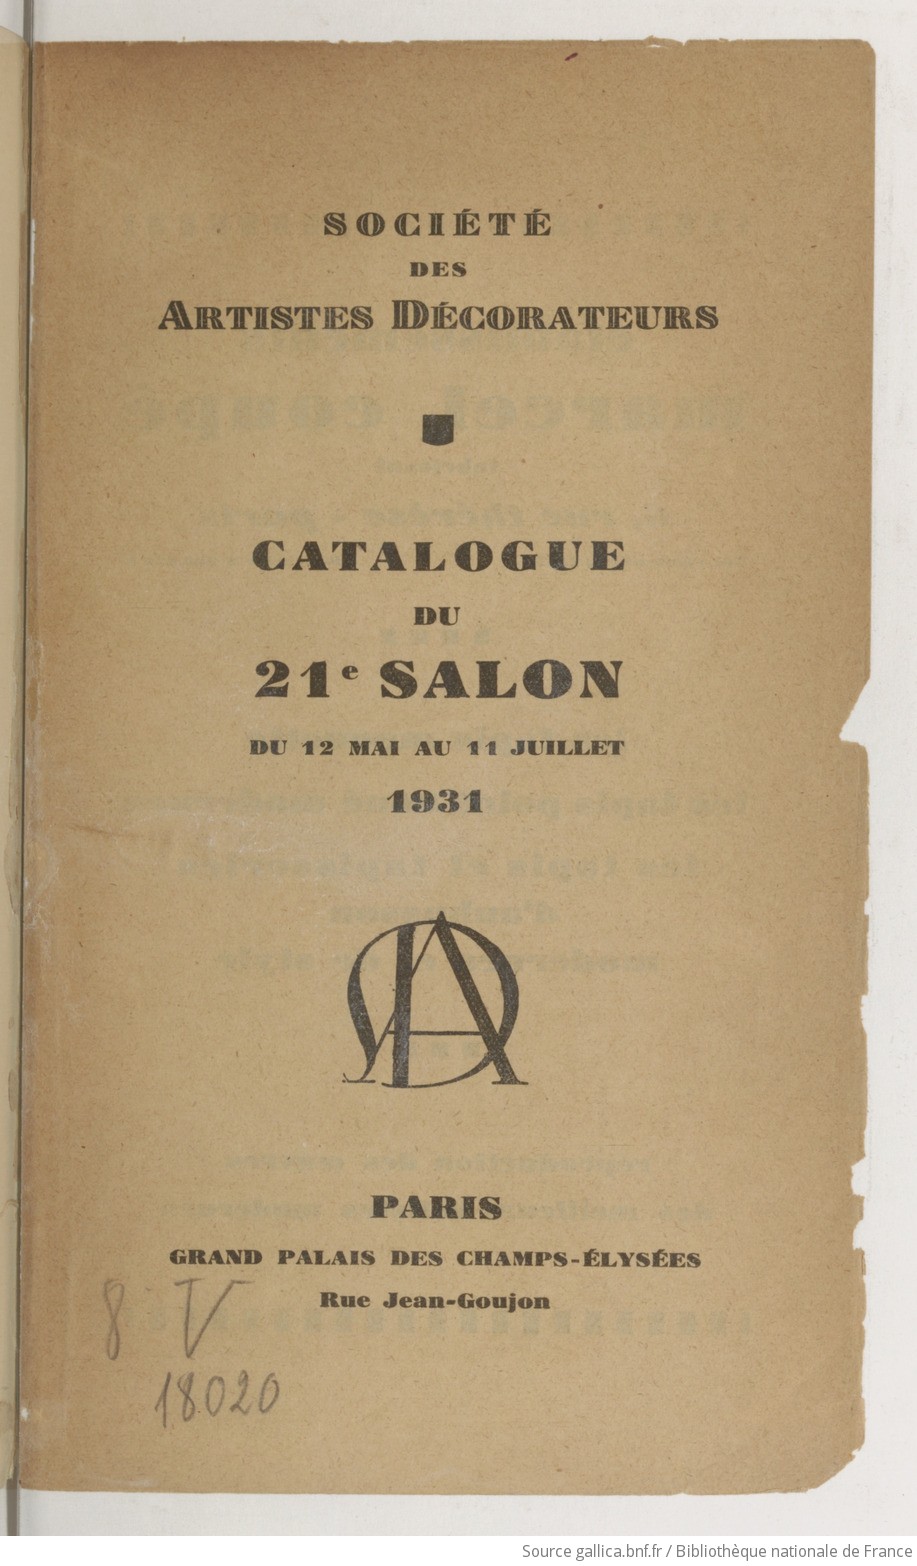 Catalogue Du Salon Societe Des Artistes Decorateurs 1931 Gallica